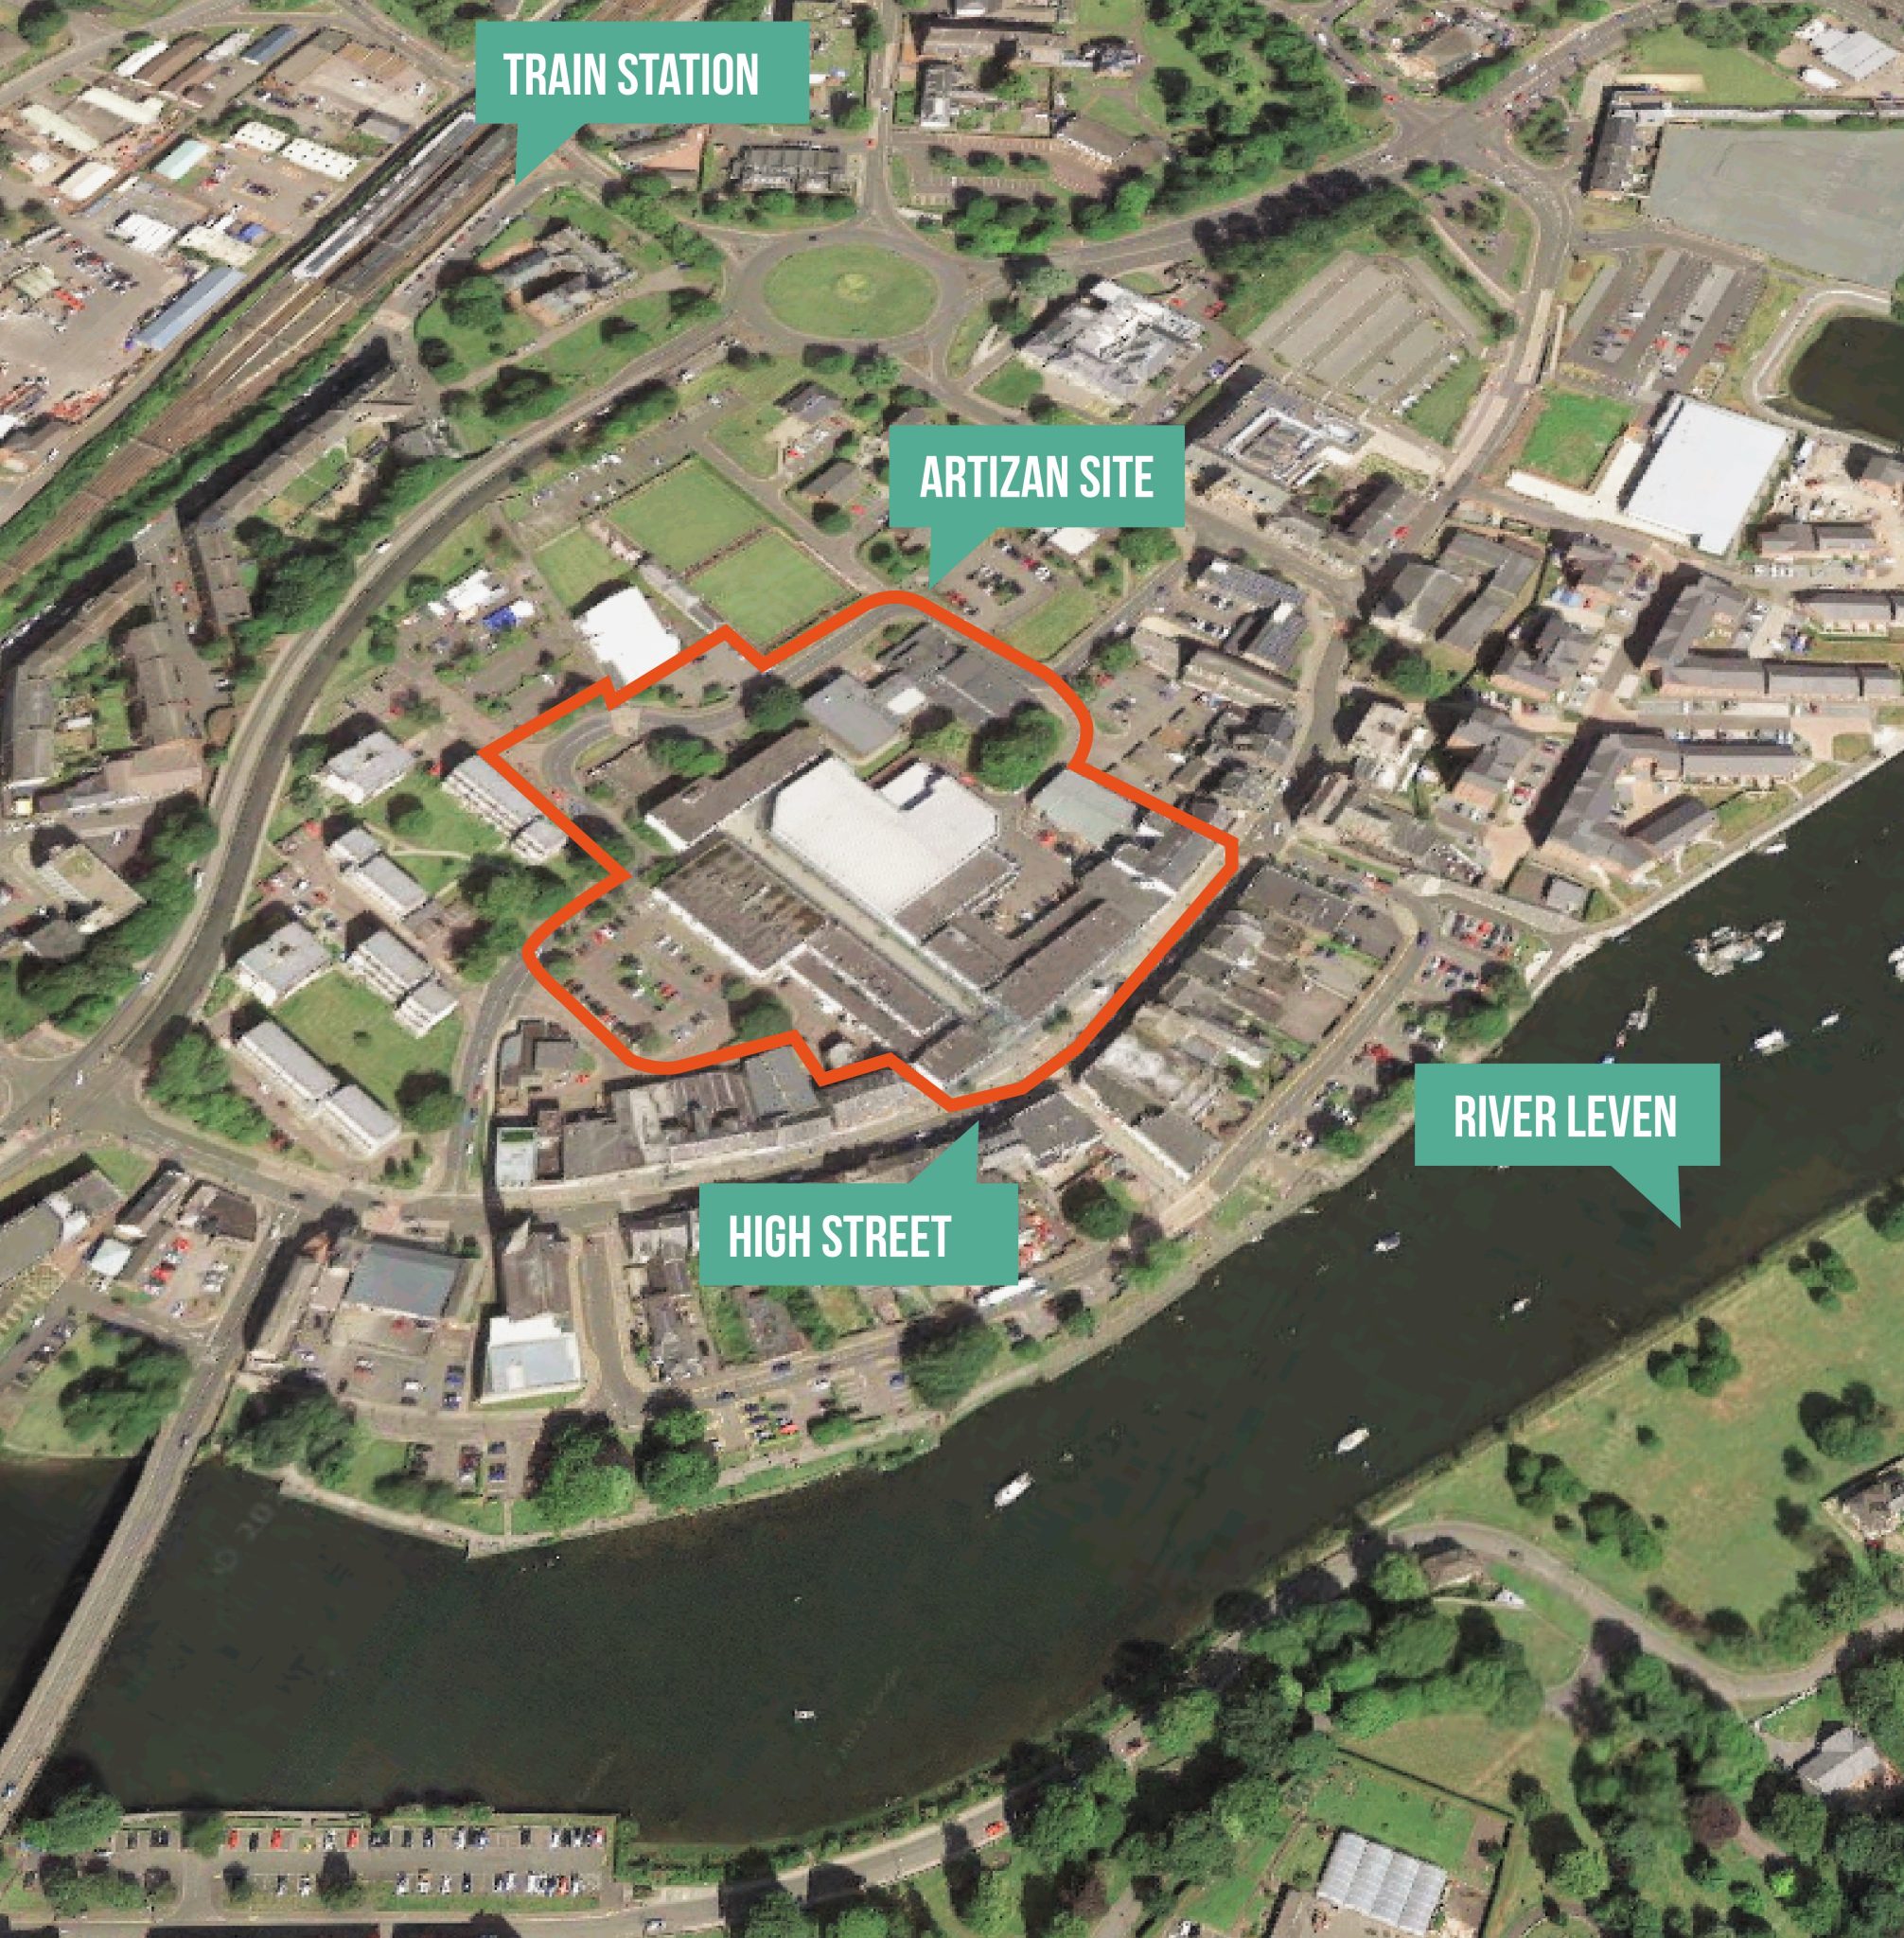 West Dunbartonshire seeks views on Artizan Centre redevelopment